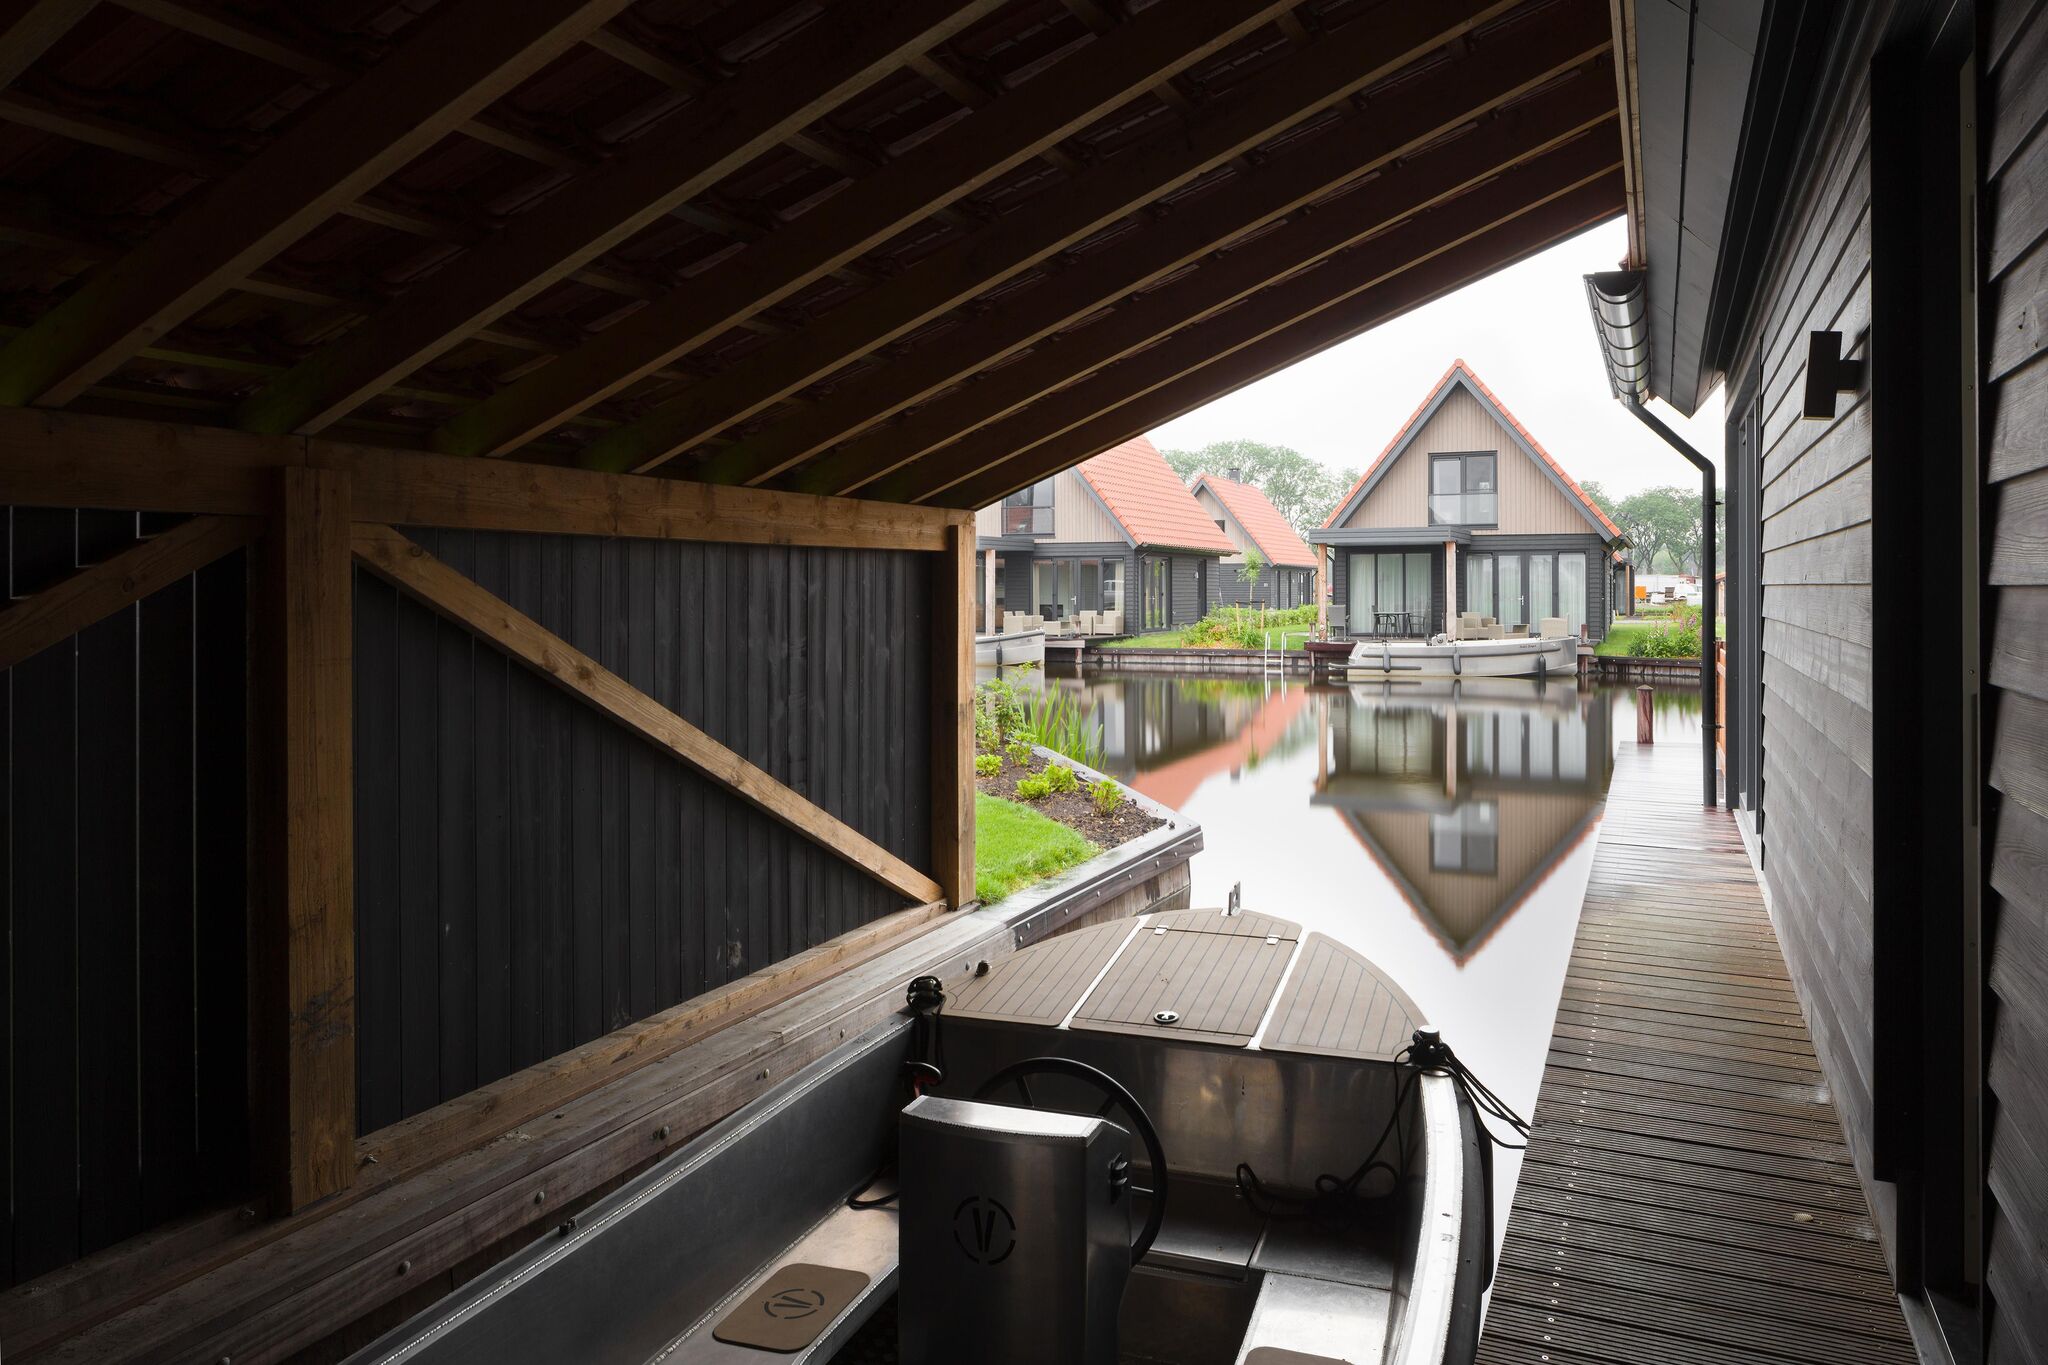 Luxuriöse Wasservilla mit 3 Bädern an den Friesischen Seen